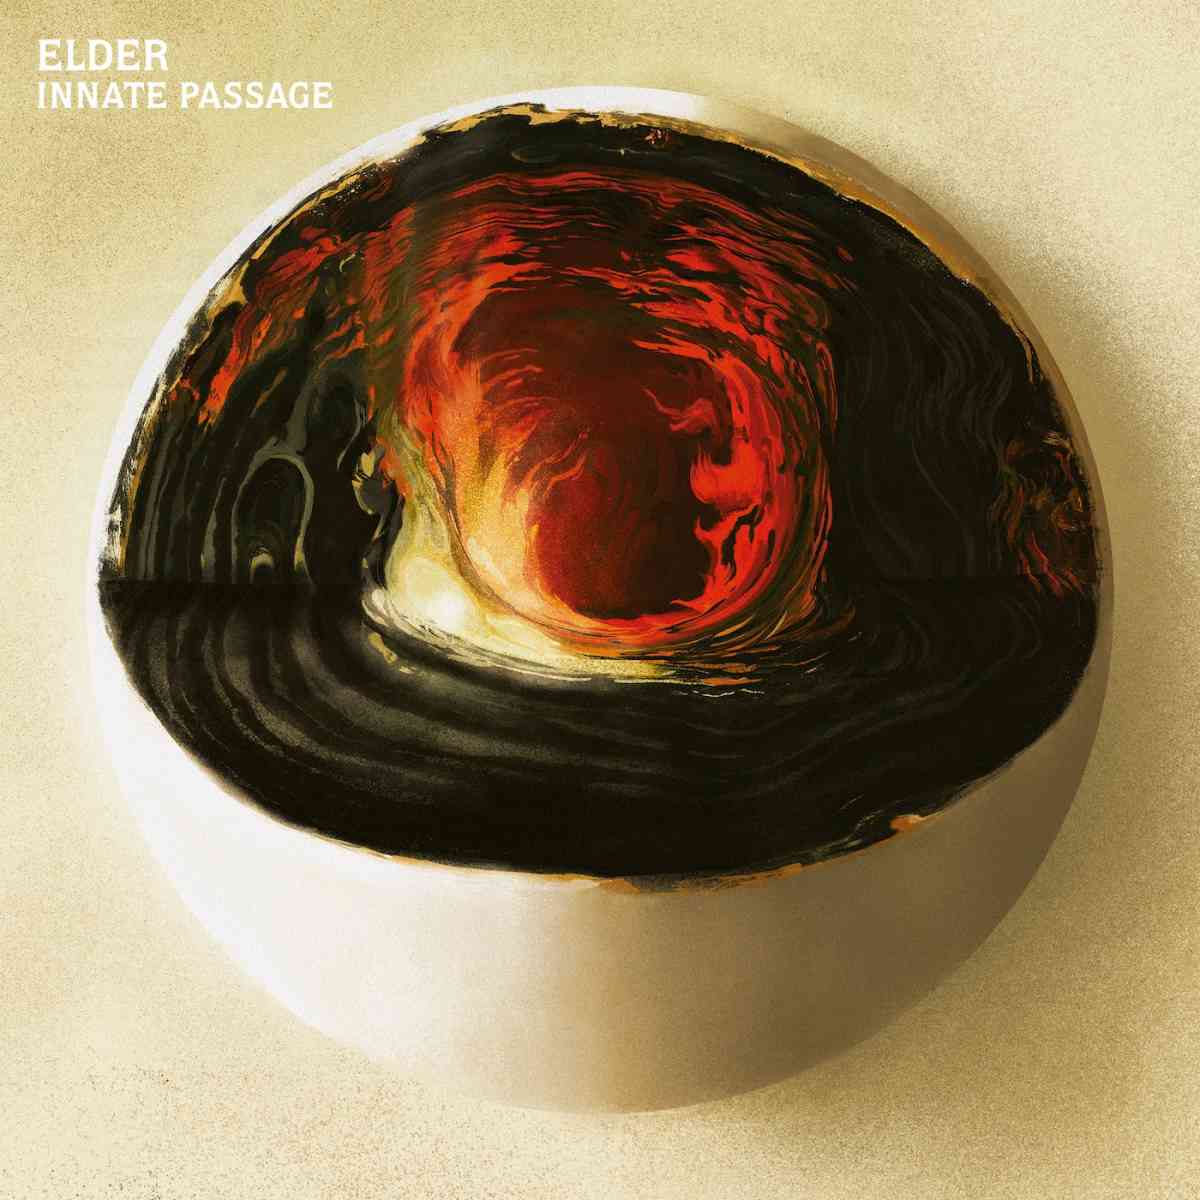 elder - Innate Passage - album cover